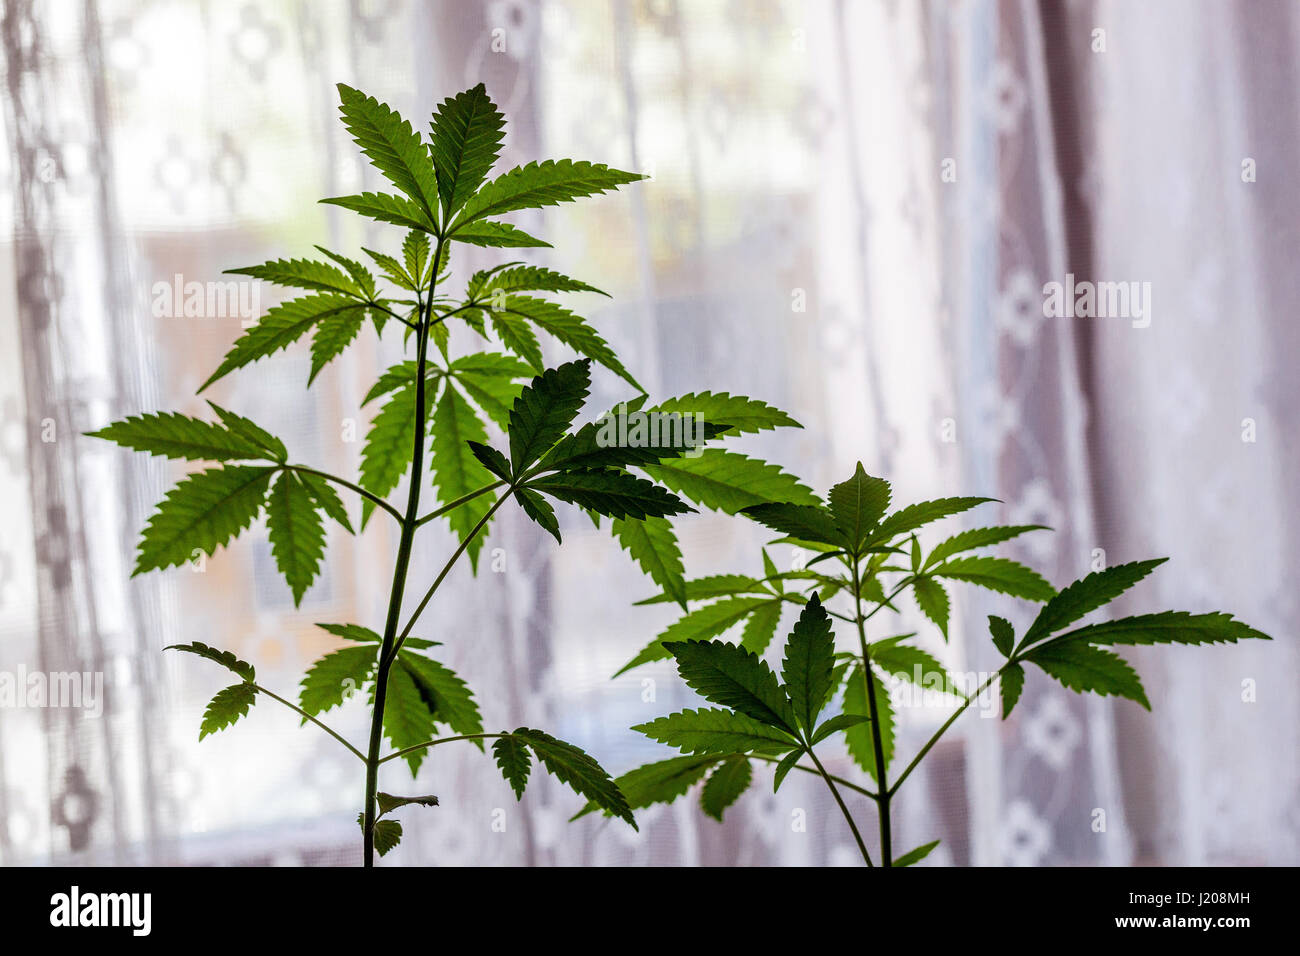 La cannabis indica la coltivazione di piante da casa a davanzale, la coltivazione domestica della pianta di marijuana per uso proprio e l'automedicazione Foto Stock